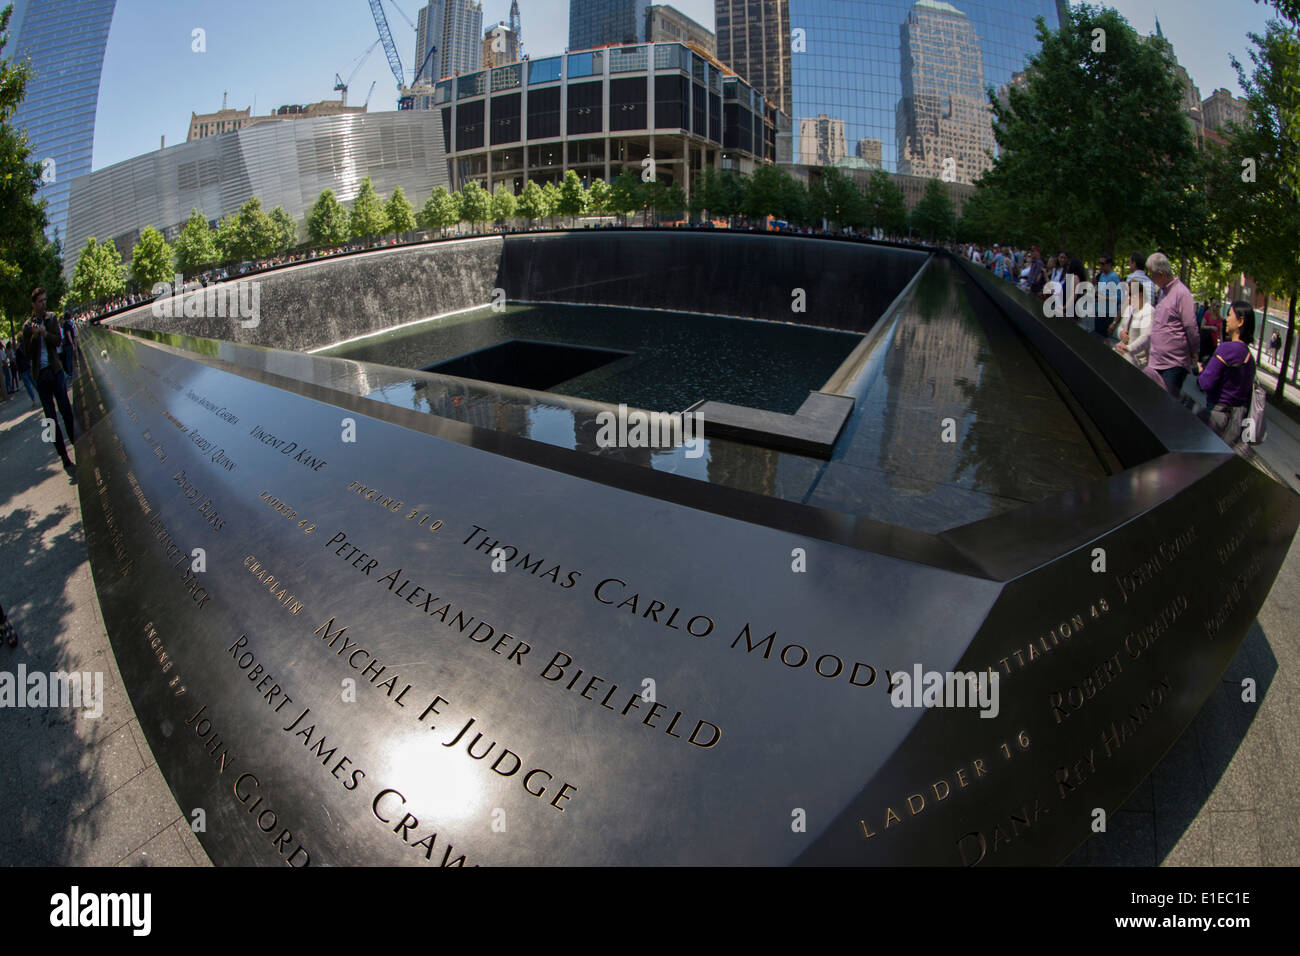 Déformée par objectif fish-eye, les noms des victimes au mémorial du 11 septembre à New York, tué à l'emplacement des attaques terroristes du 11 septembre 2001. Le 11 septembre, National Memorial est un hommage du souvenir et de l'honneur de la près de 3 000 personnes tuées dans les attentats du 11 septembre 2001 au site du World Trade Center, près de Shanksville, en Pennsylvanie, et au Pentagone, de même que les six personnes tuées dans l'attentat contre le World Trade Center en février 1993. Banque D'Images